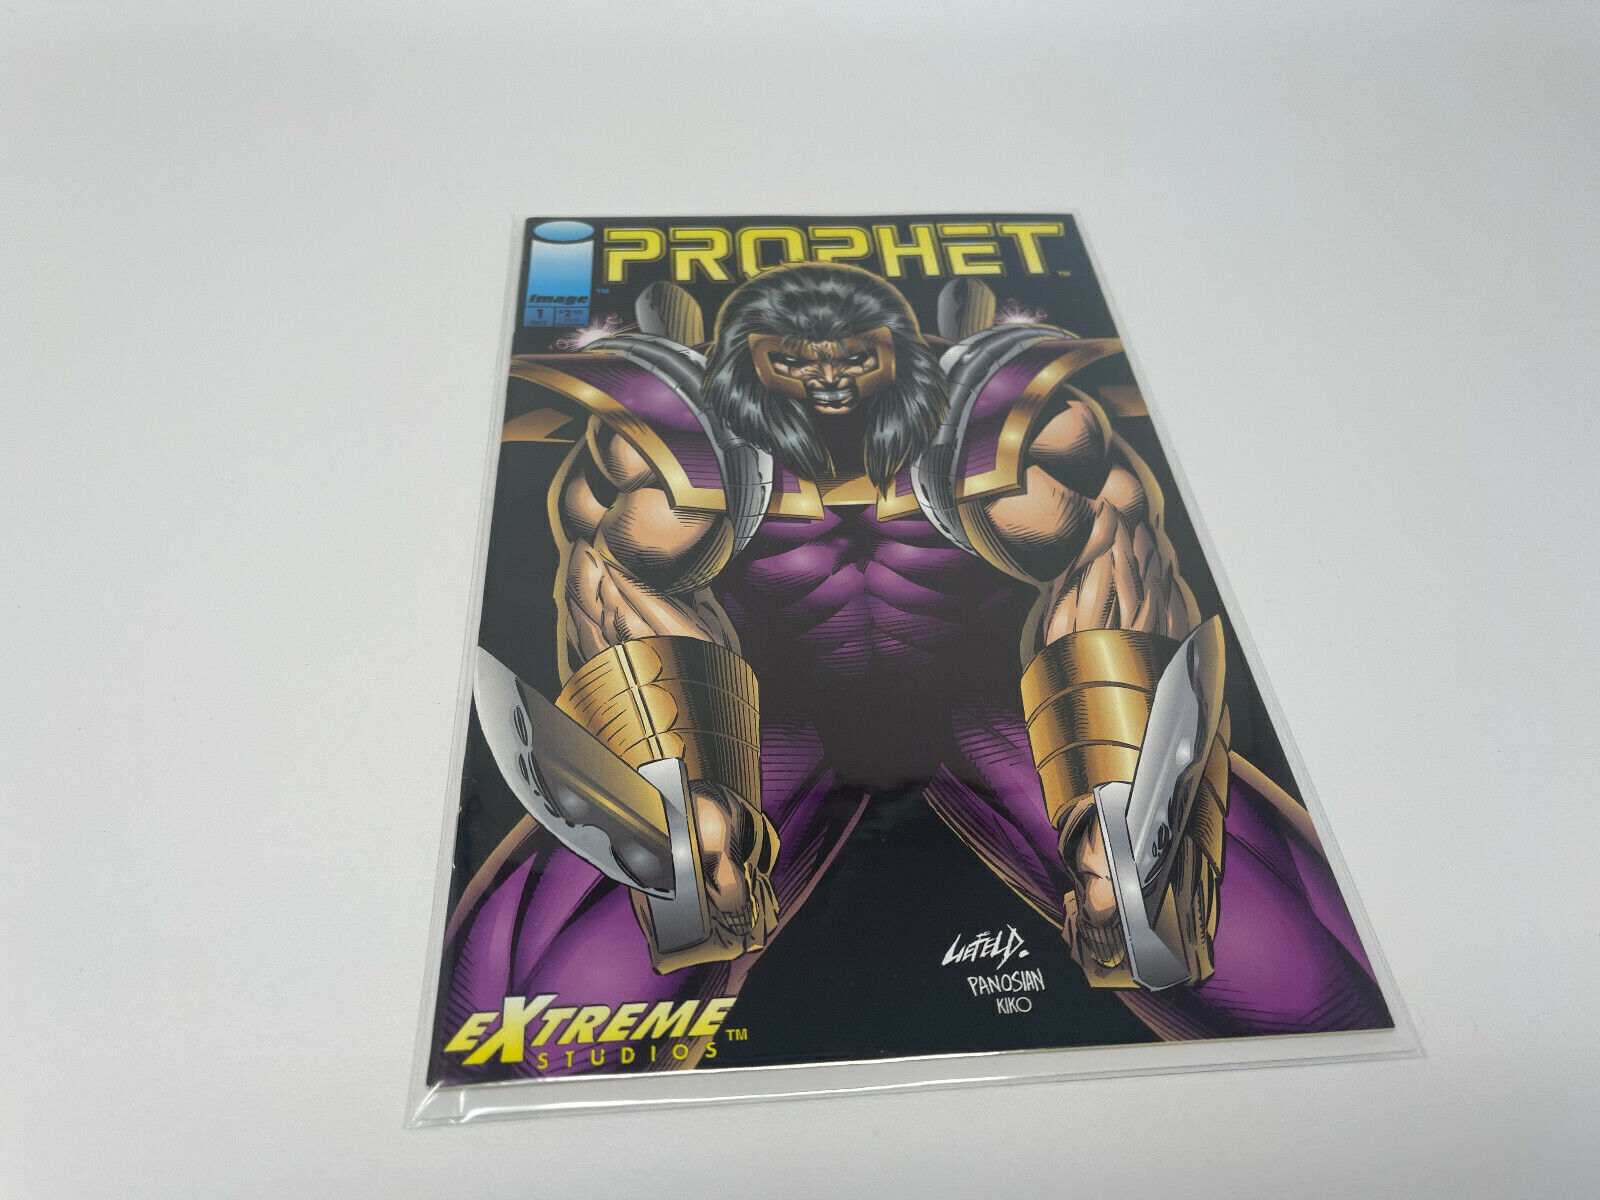 Prophet #1 (Image Comics, 1993) Rob Liefeld Extreme Studios 001